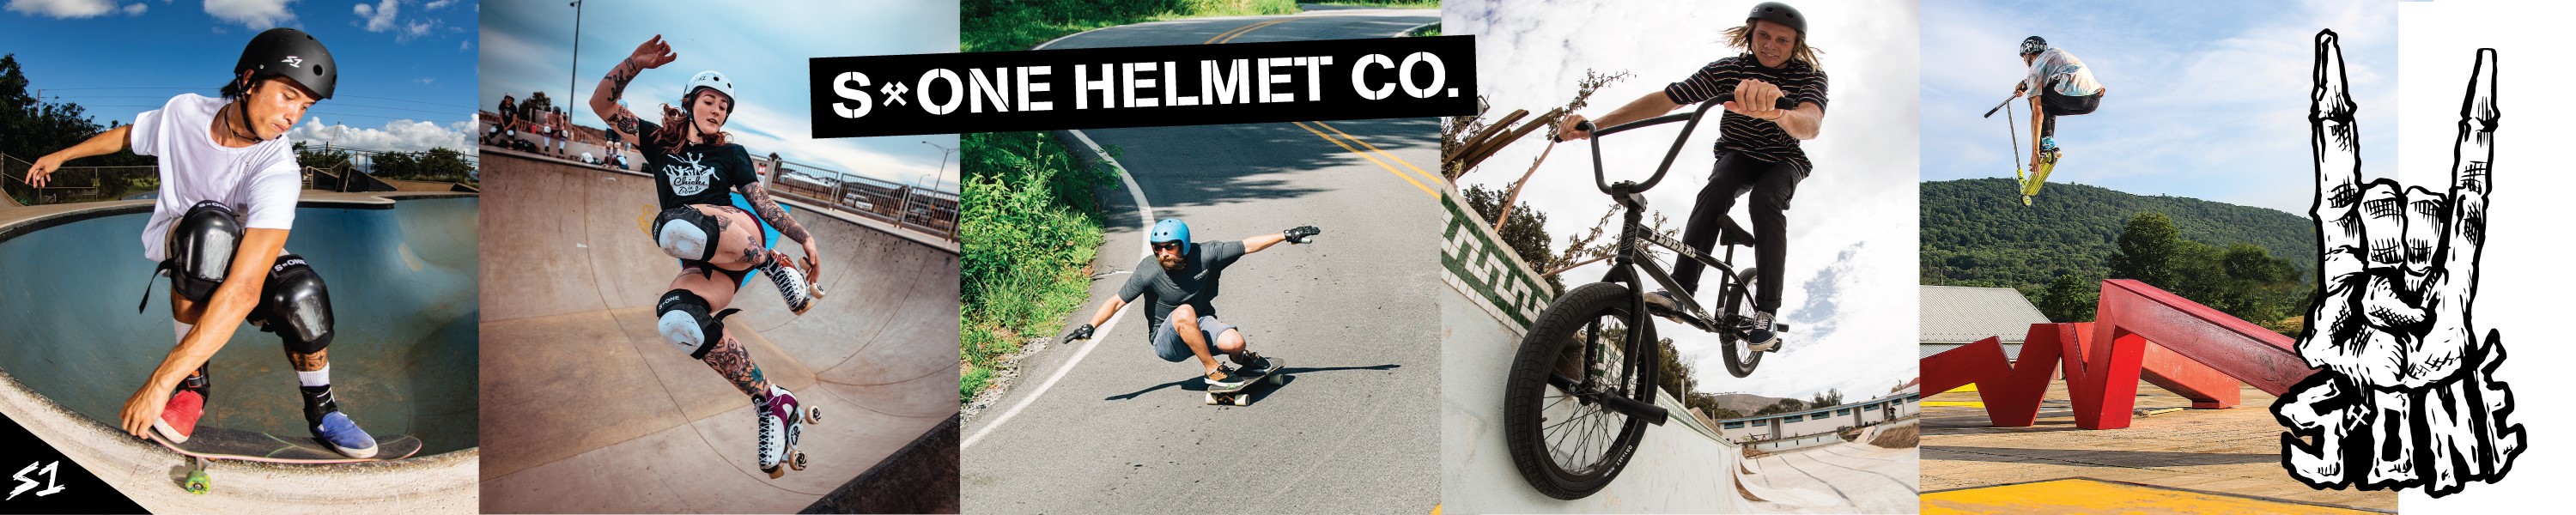 skateboard helmets roller skate helmets bike helmets skate helmets s1 helmet co.jpg